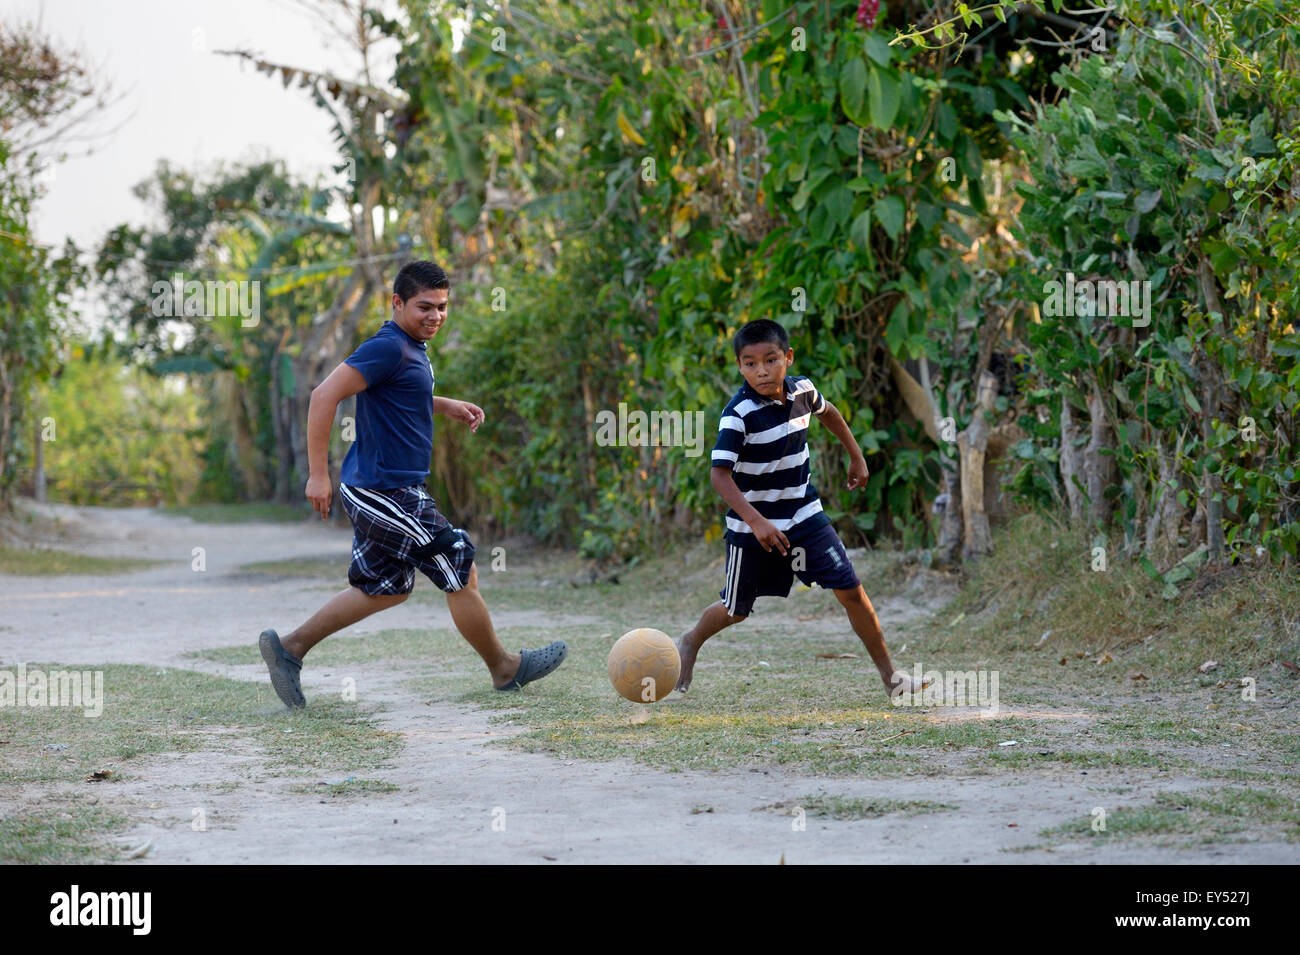 Jugendliche, die Fußball spielen auf einem Fußballplatz, slum, Colonia Monsenor Romero, Distrito Itália, San Salvador, El Salvador Stockfoto